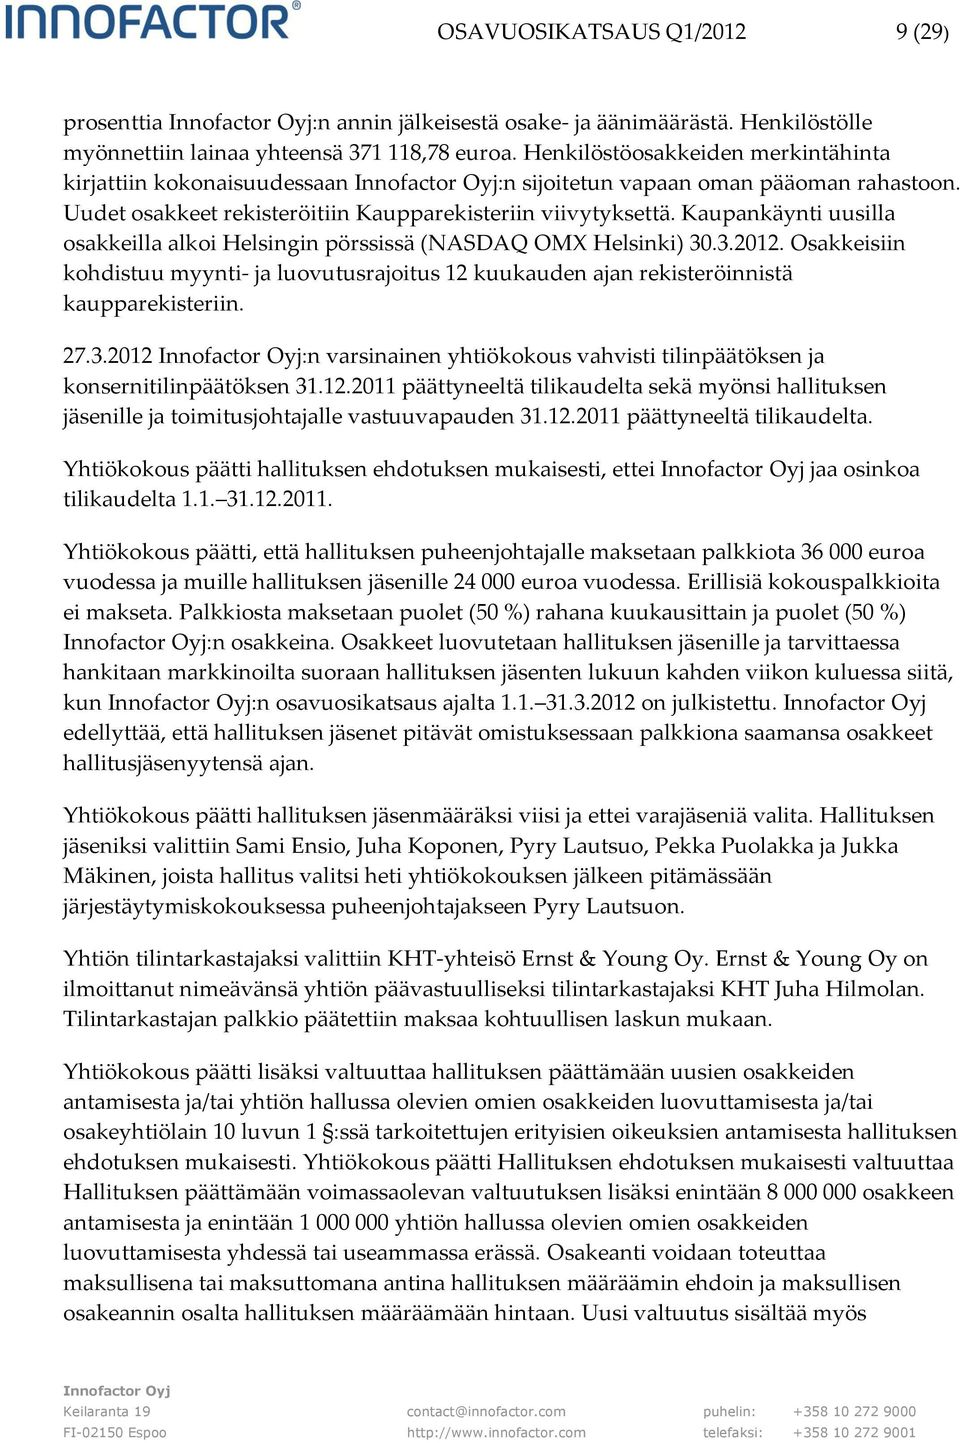 Kaupankäynti uusilla osakkeilla alkoi Helsingin pörssissä (NASDAQ OMX Helsinki) 30.3.2012. Osakkeisiin kohdistuu myynti- ja luovutusrajoitus 12 kuukauden ajan rekisteröinnistä kaupparekisteriin. 27.3.2012 :n varsinainen yhtiökokous vahvisti tilinpäätöksen ja konsernitilinpäätöksen 31.